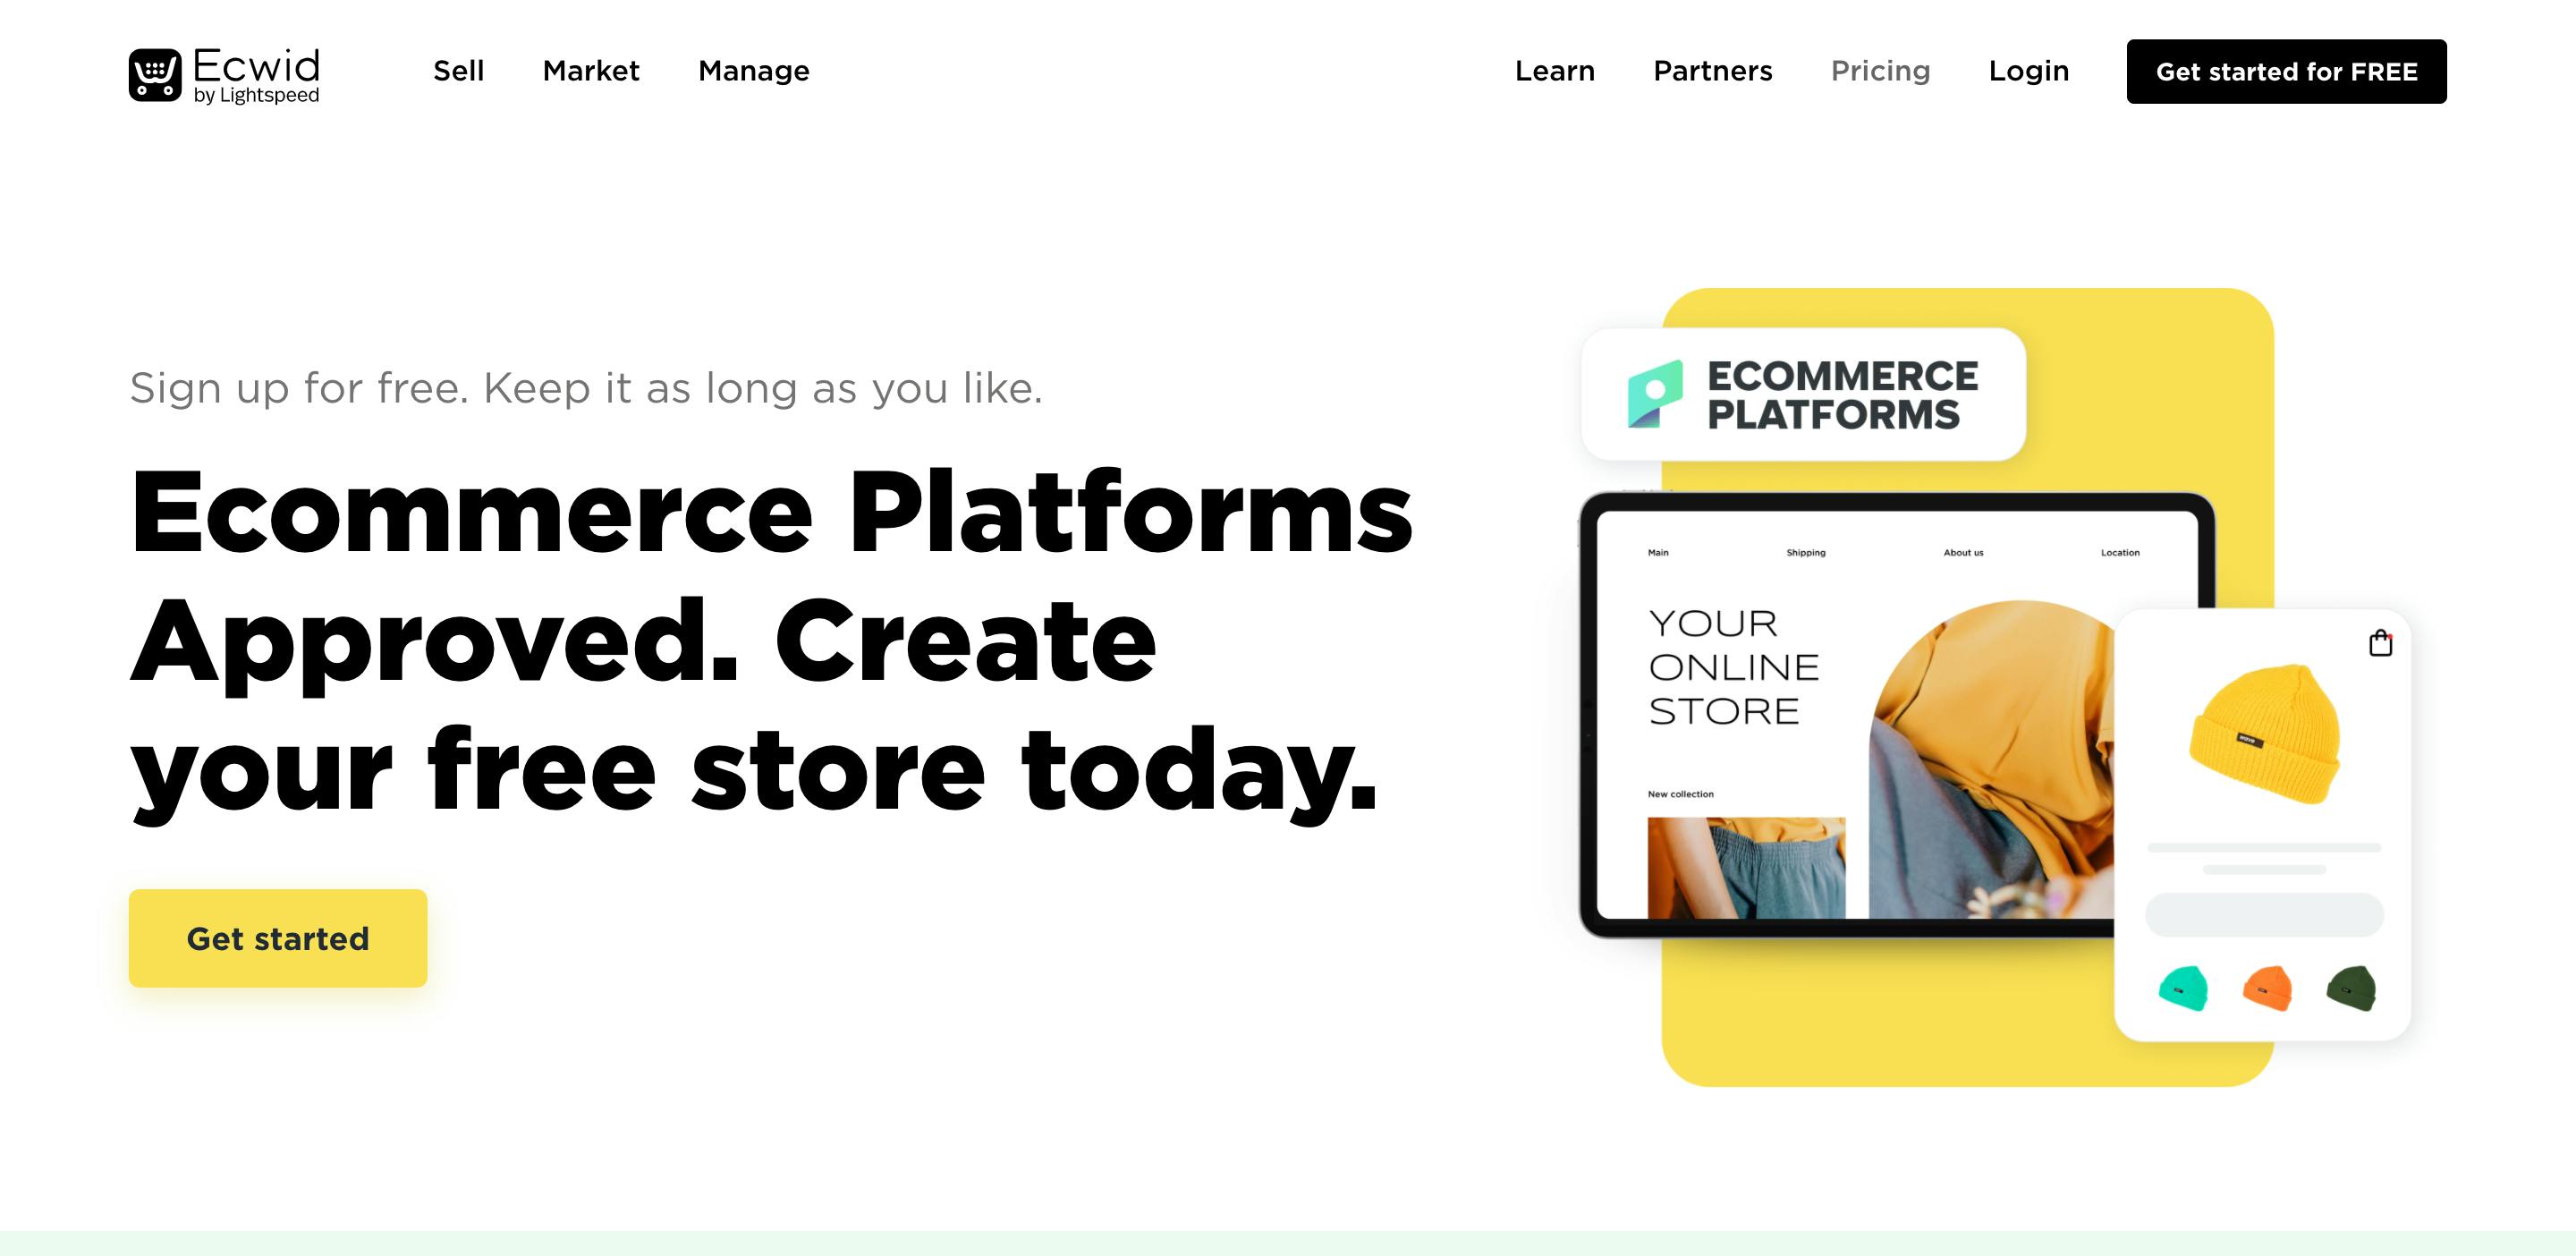 ecommerce platform ecwid